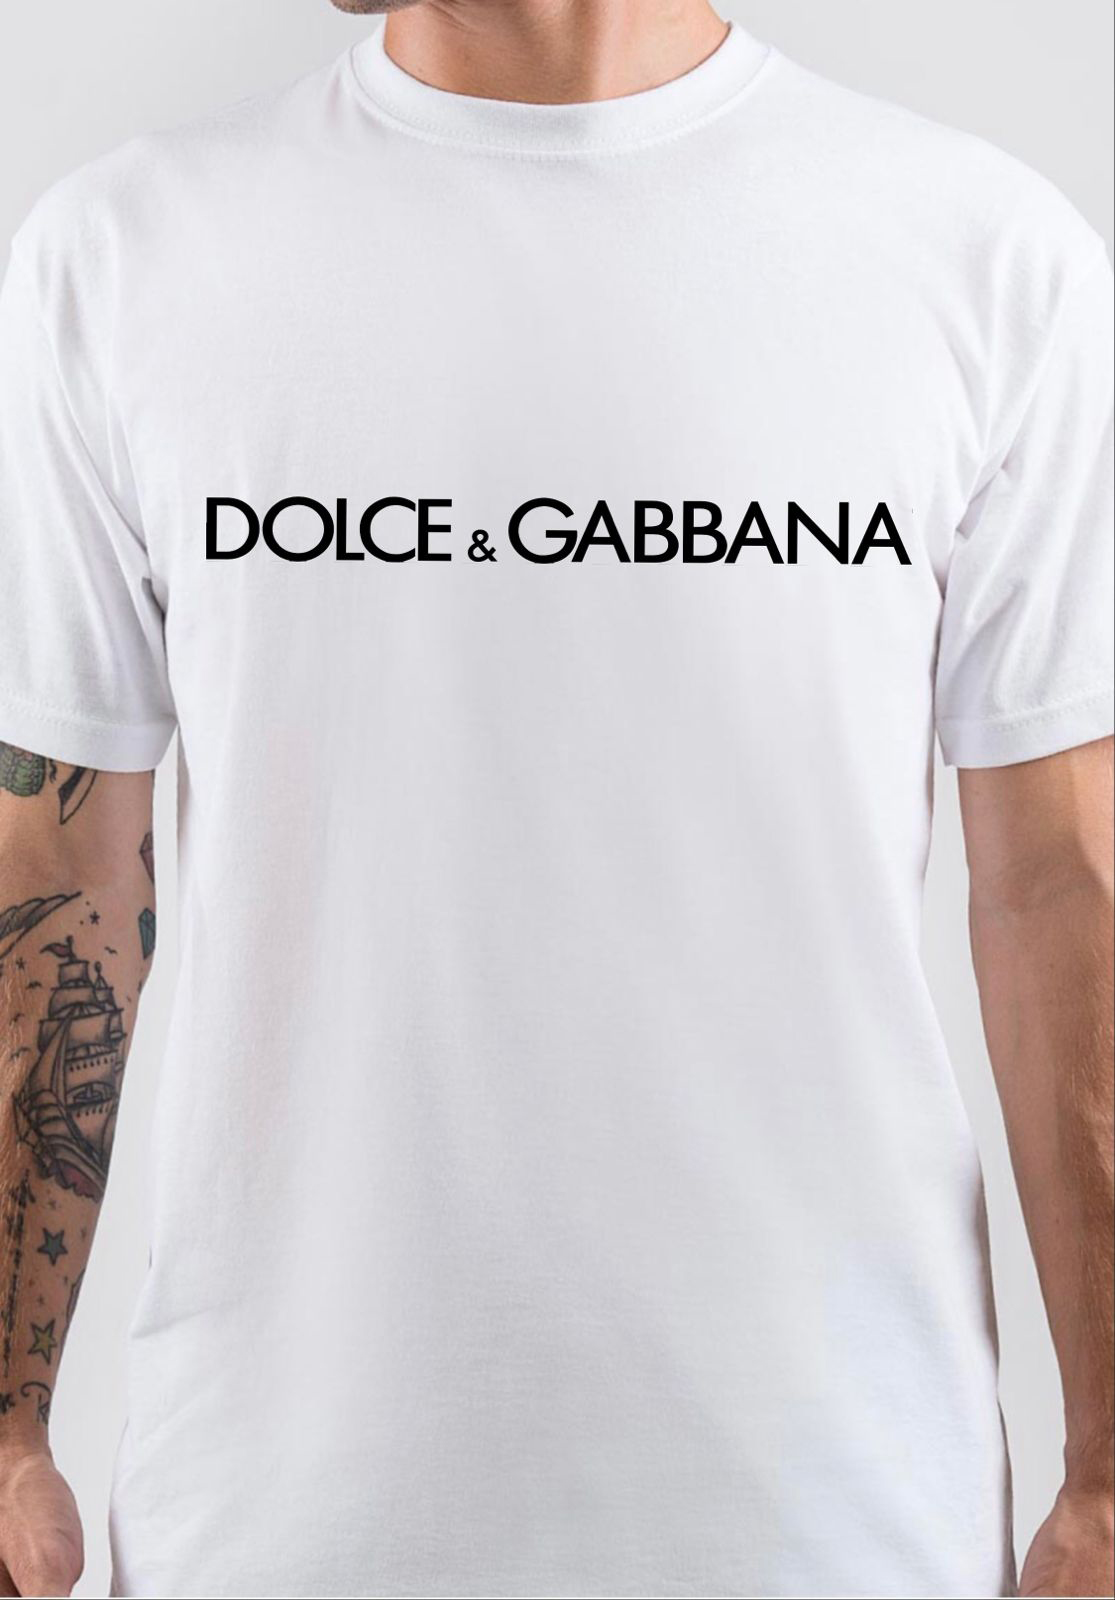 Dolce And Gabbana T Shirt Swag Shirts